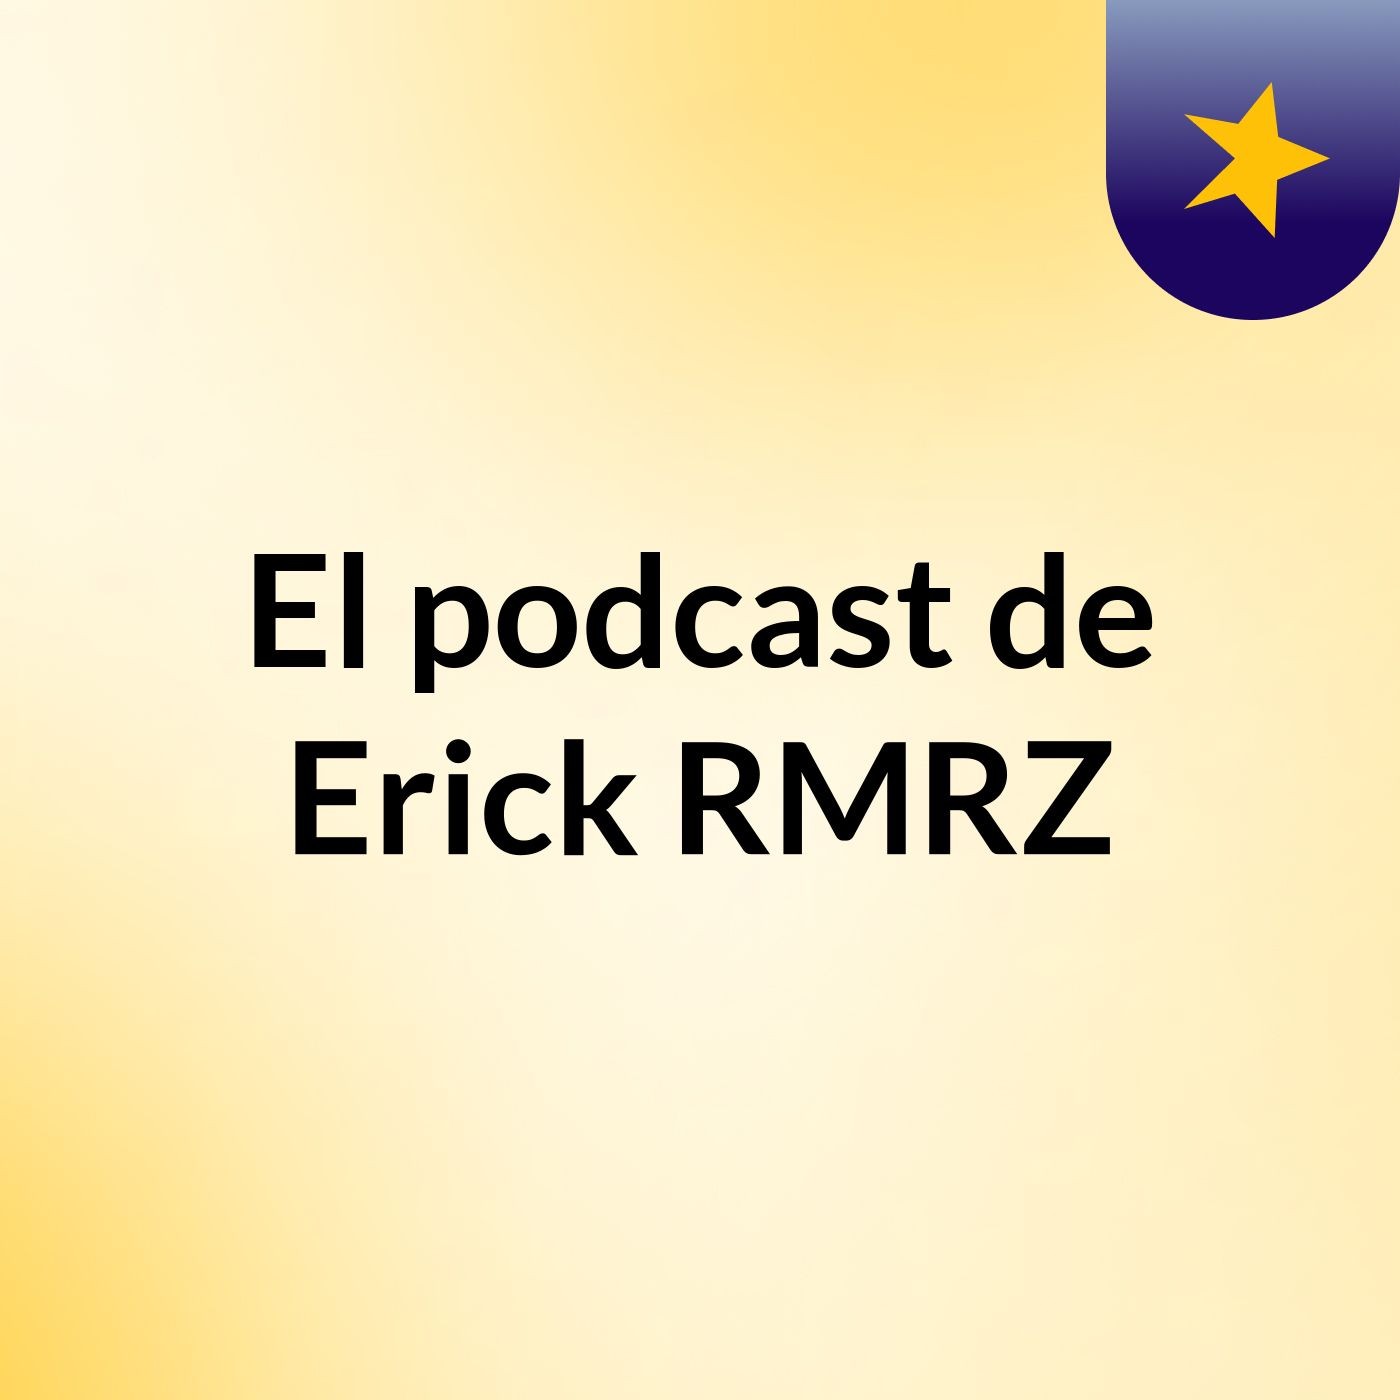 El podcast de Erick RMRZ